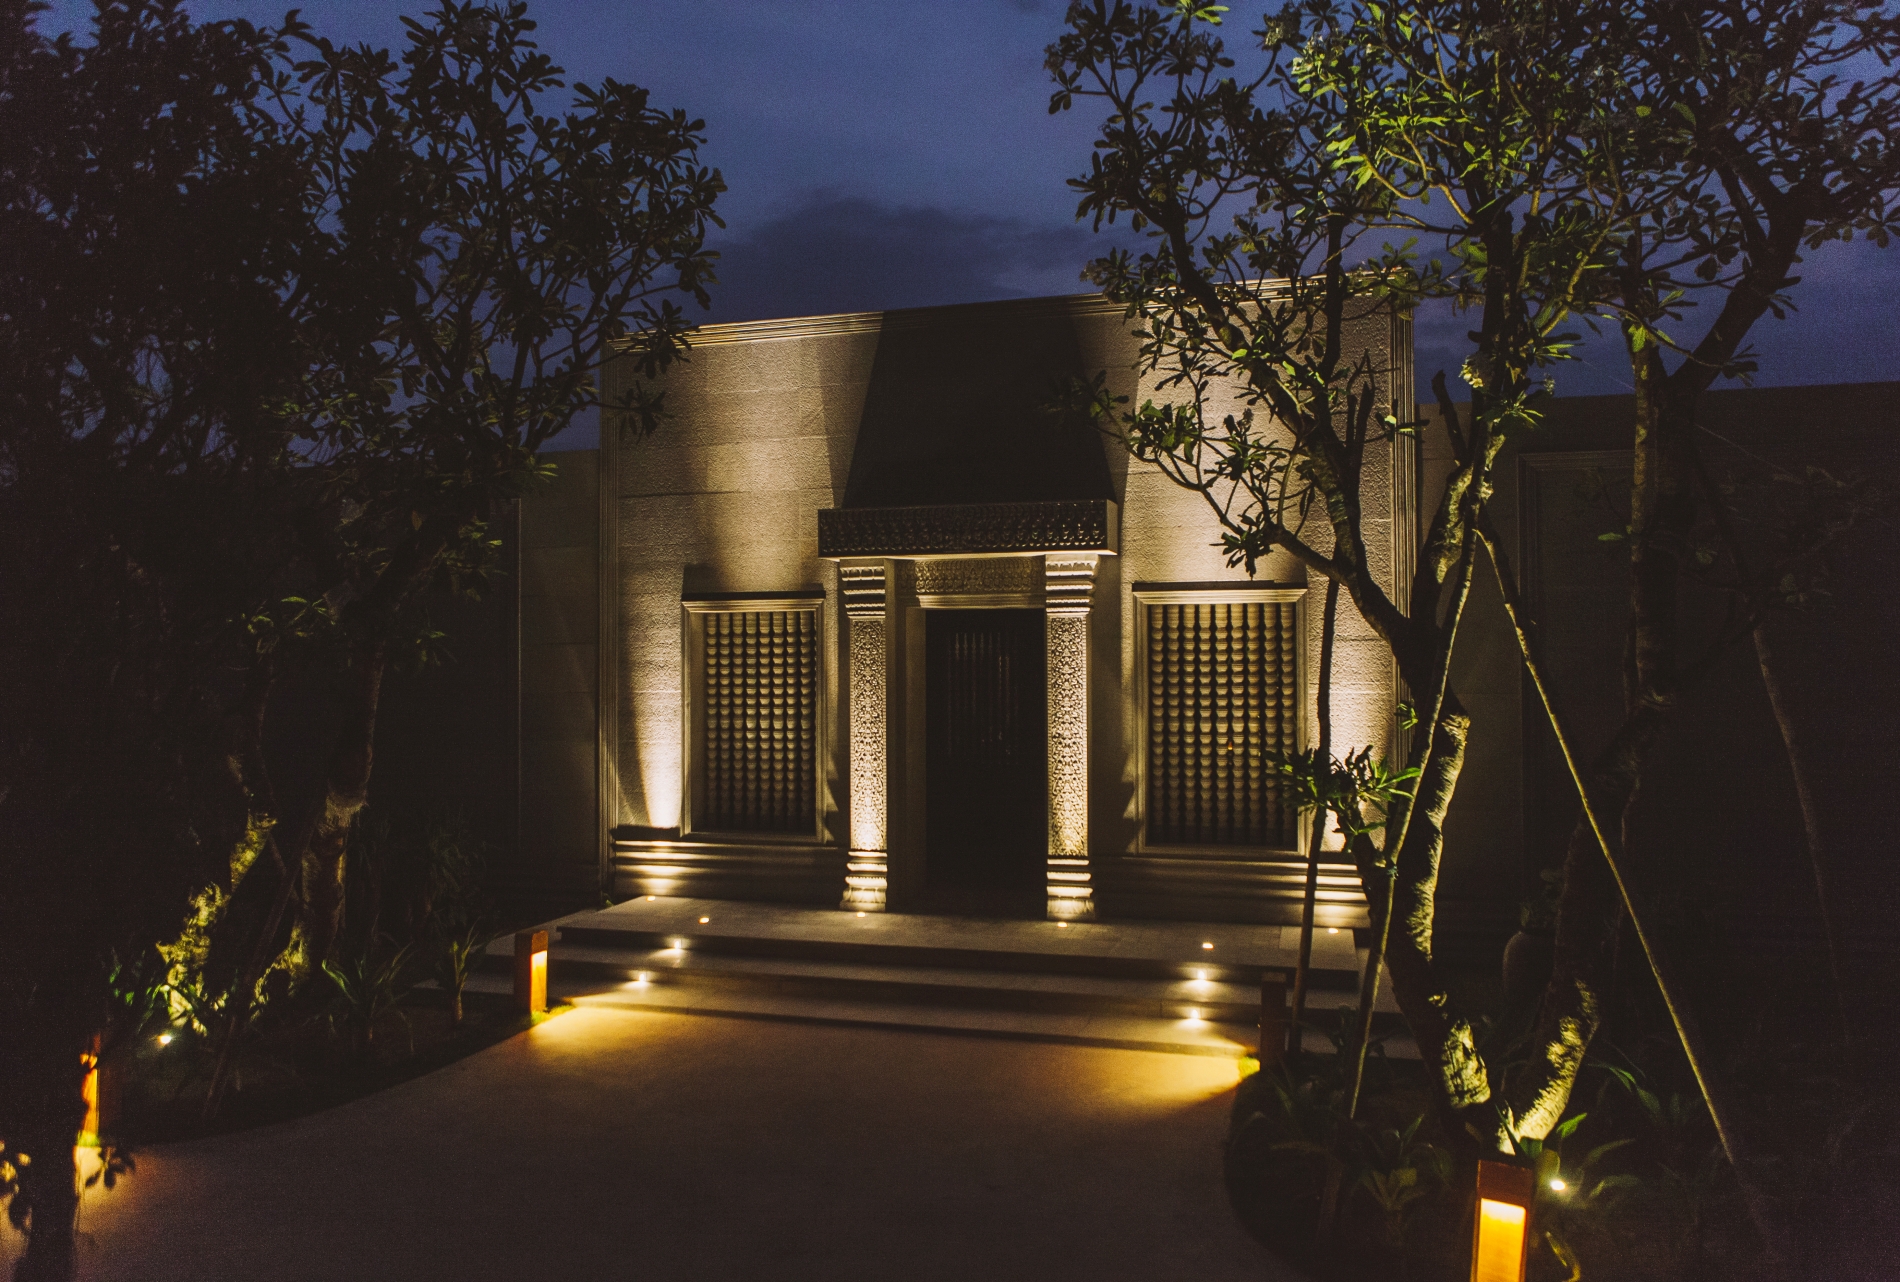 foto stein eingang vom spa bereich im asiatischen extoischen stil im schönen exklusiven klassischen urigen und altmodischen hotel phun baitang in kambodscha asien 